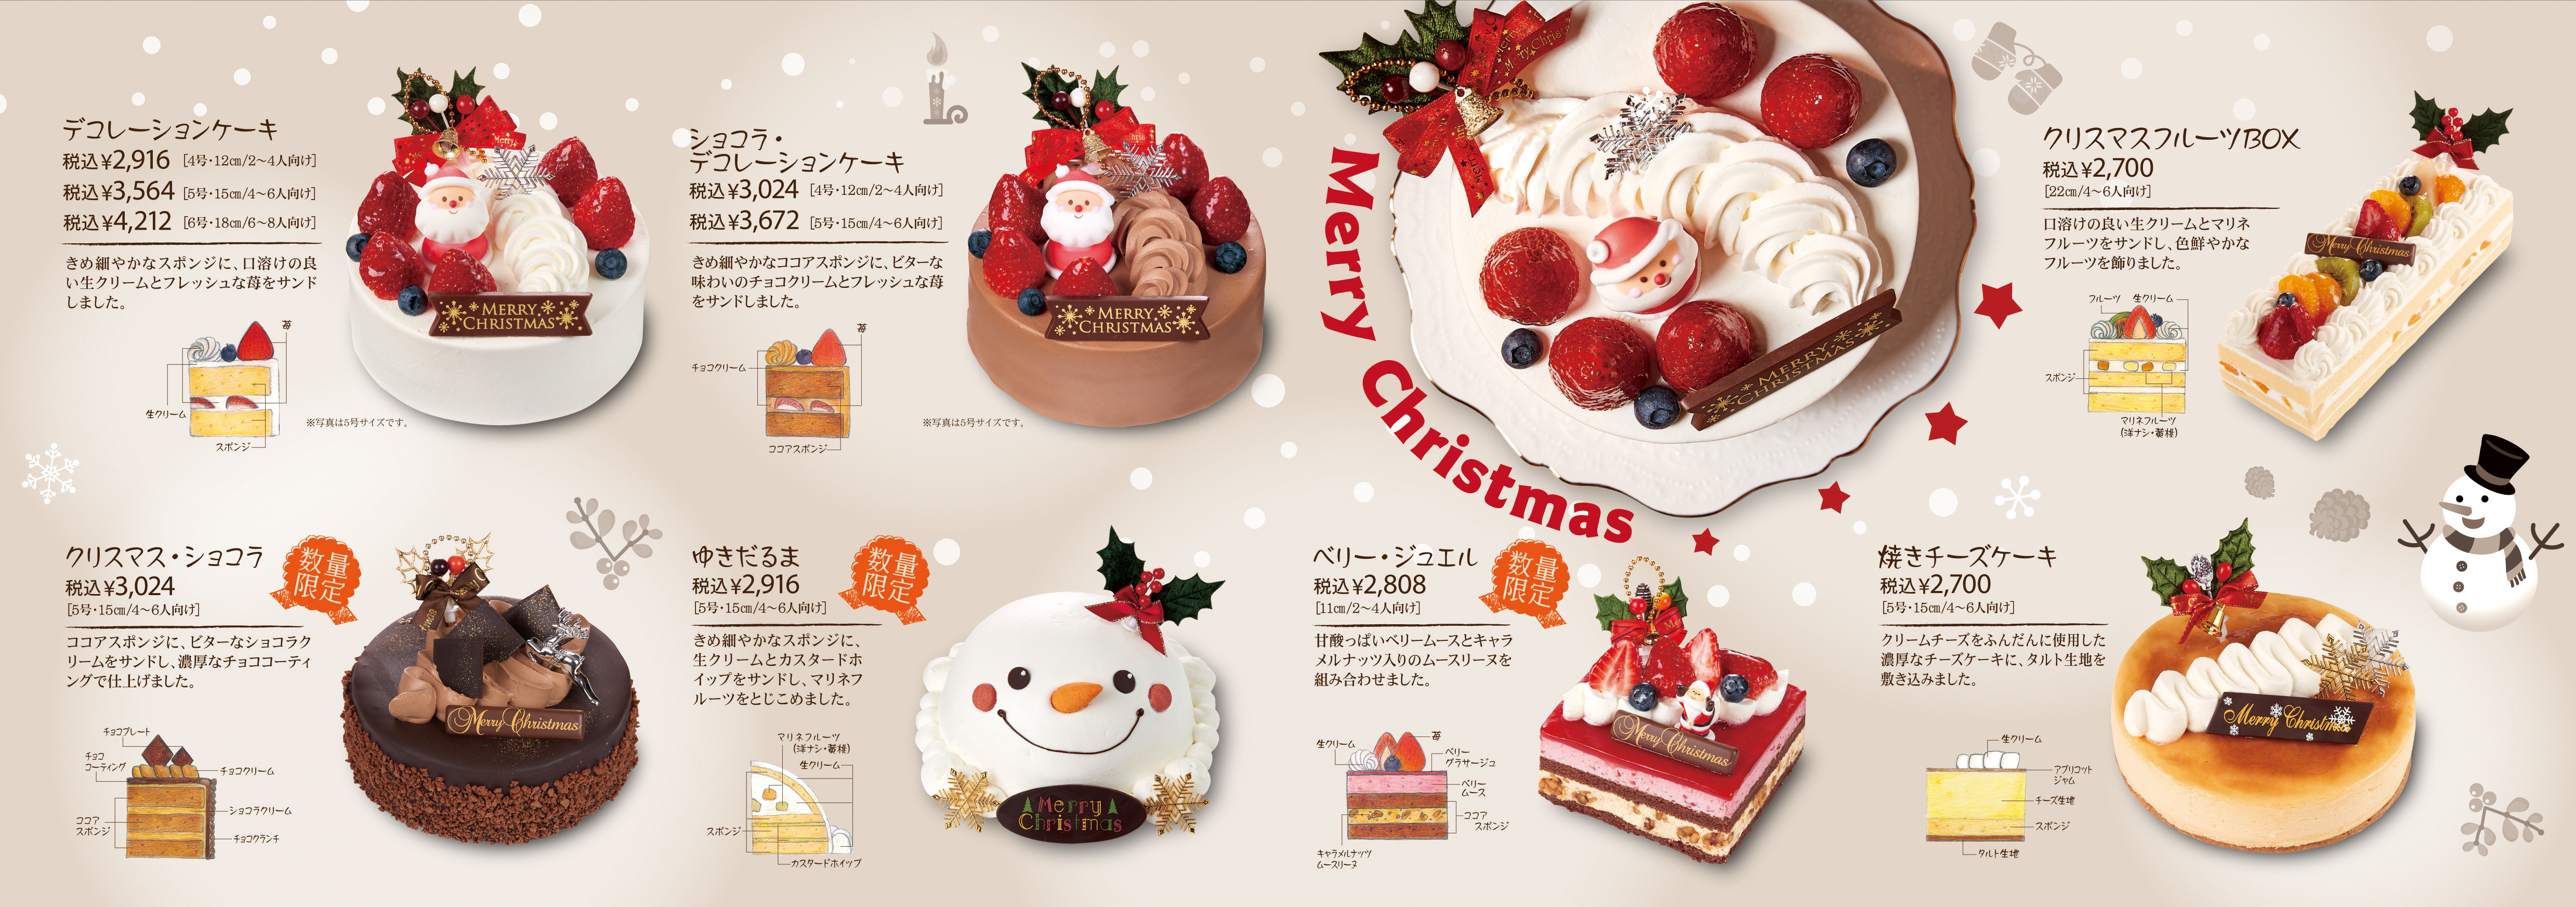 Make Bake クリスマスケーキのご案内 エーデルワイス沖縄